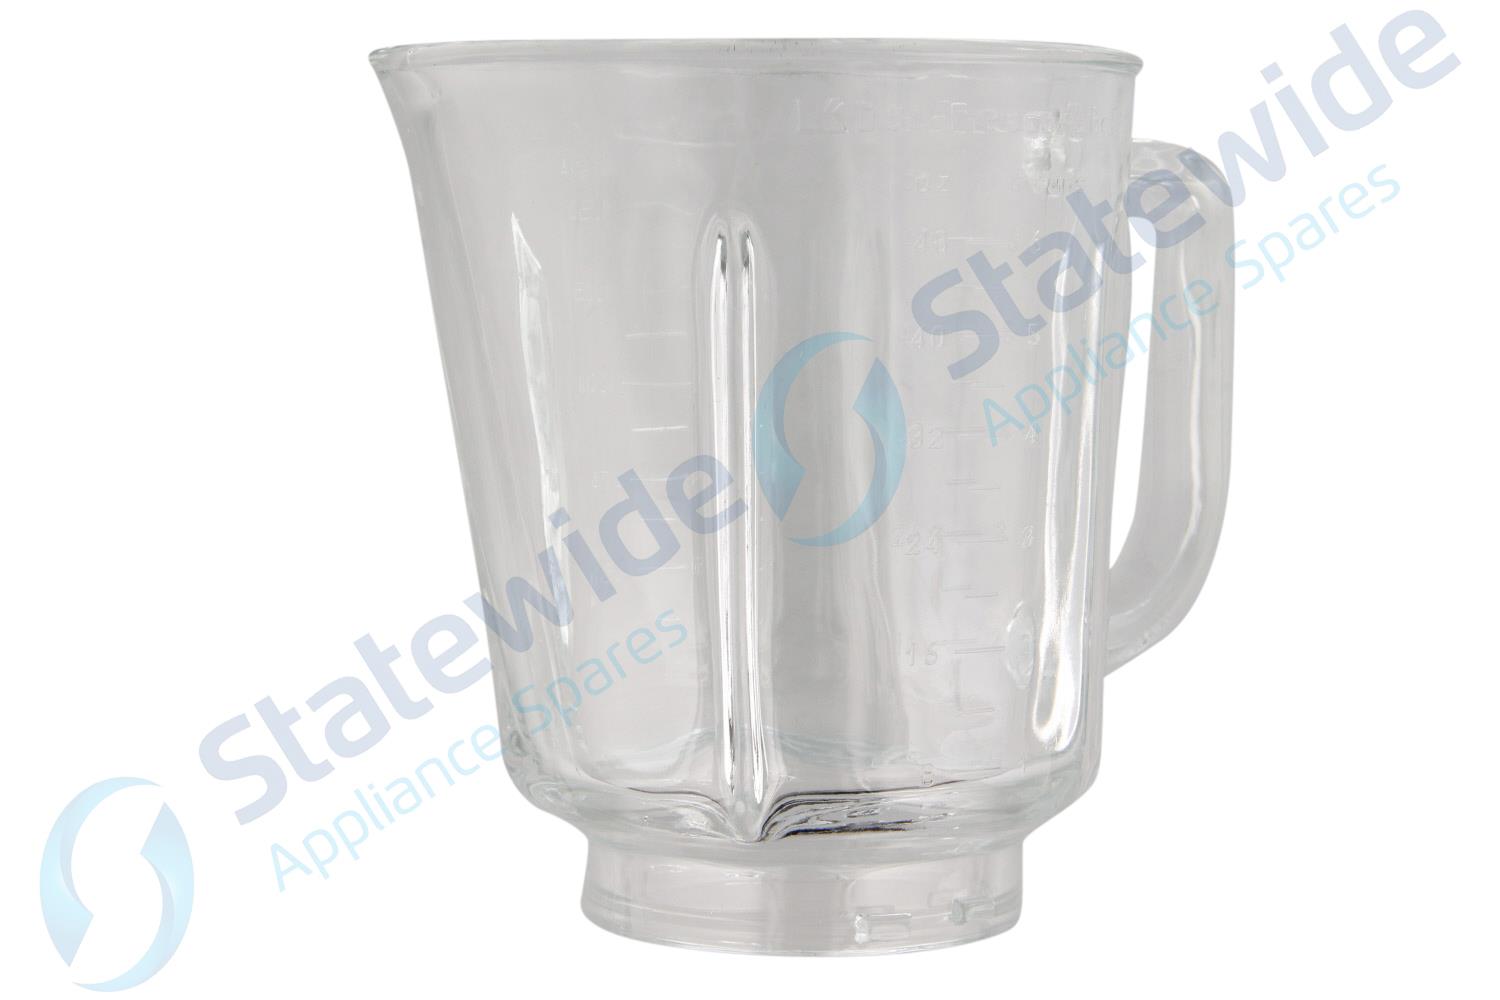 W10221782 - KitchenAid Glass Blender Jar